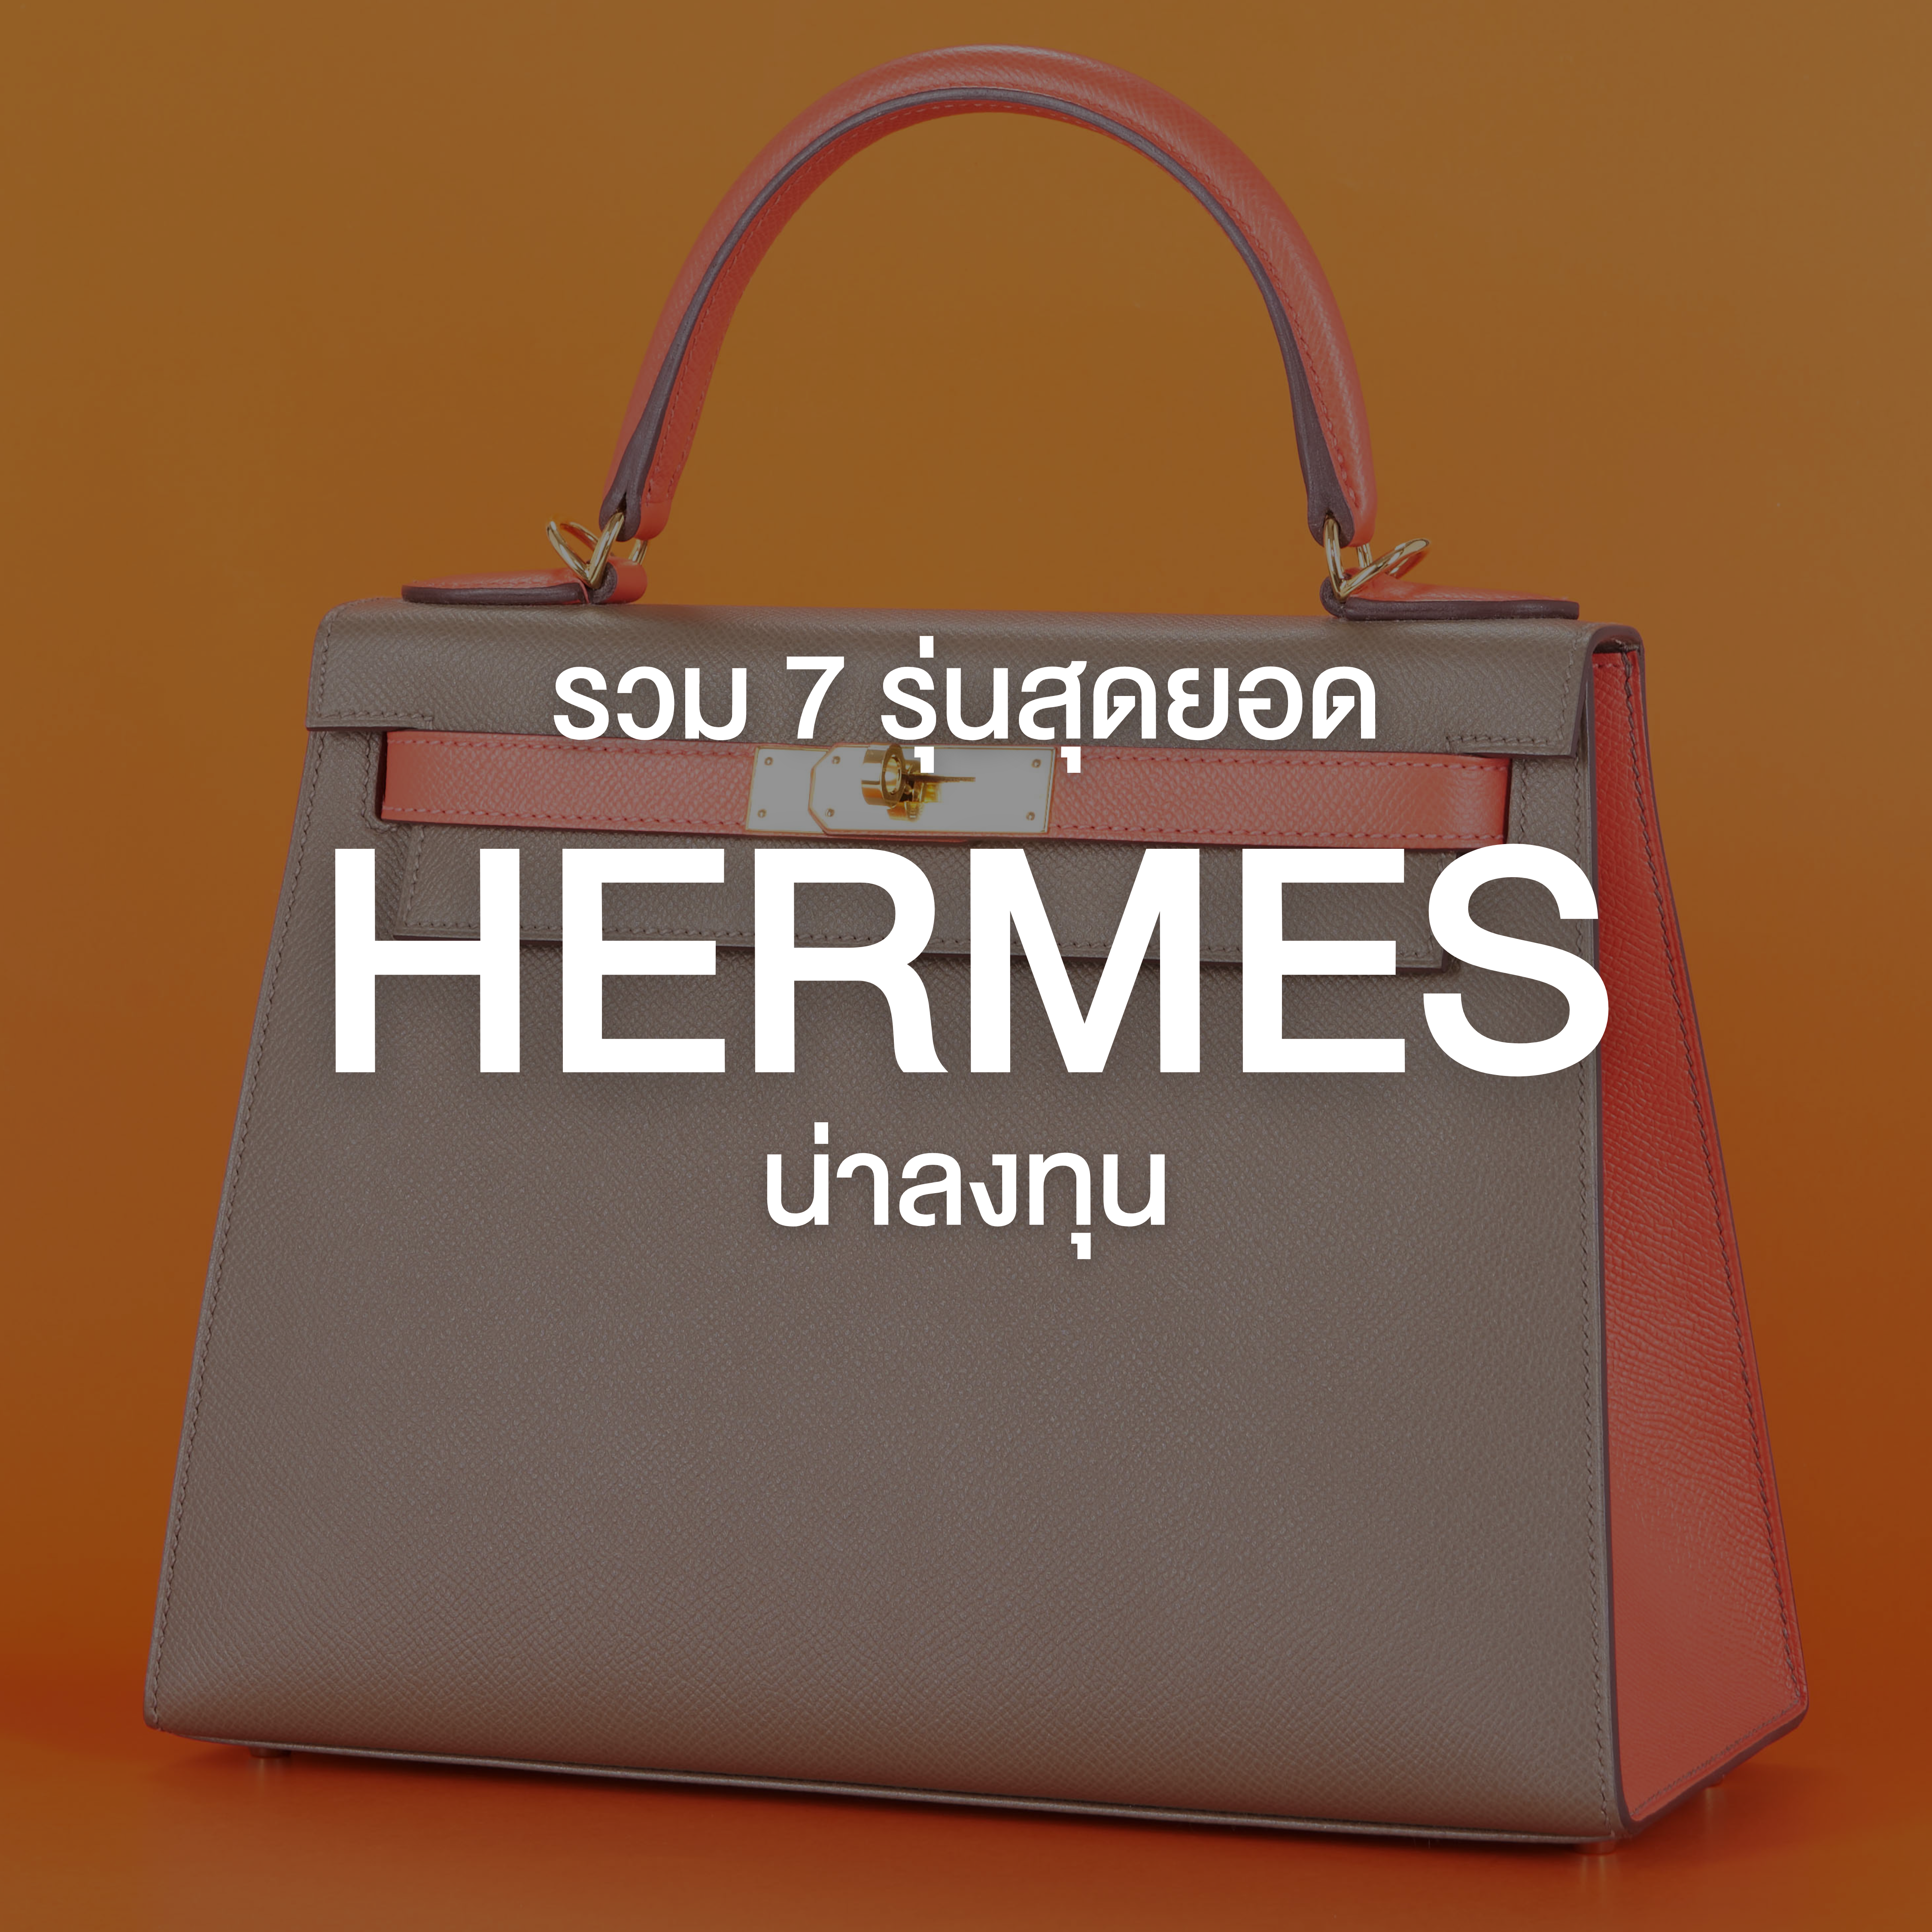 รวม 7 รุ่นสุดยอดกระเป๋า Hermes น่าลงทุน